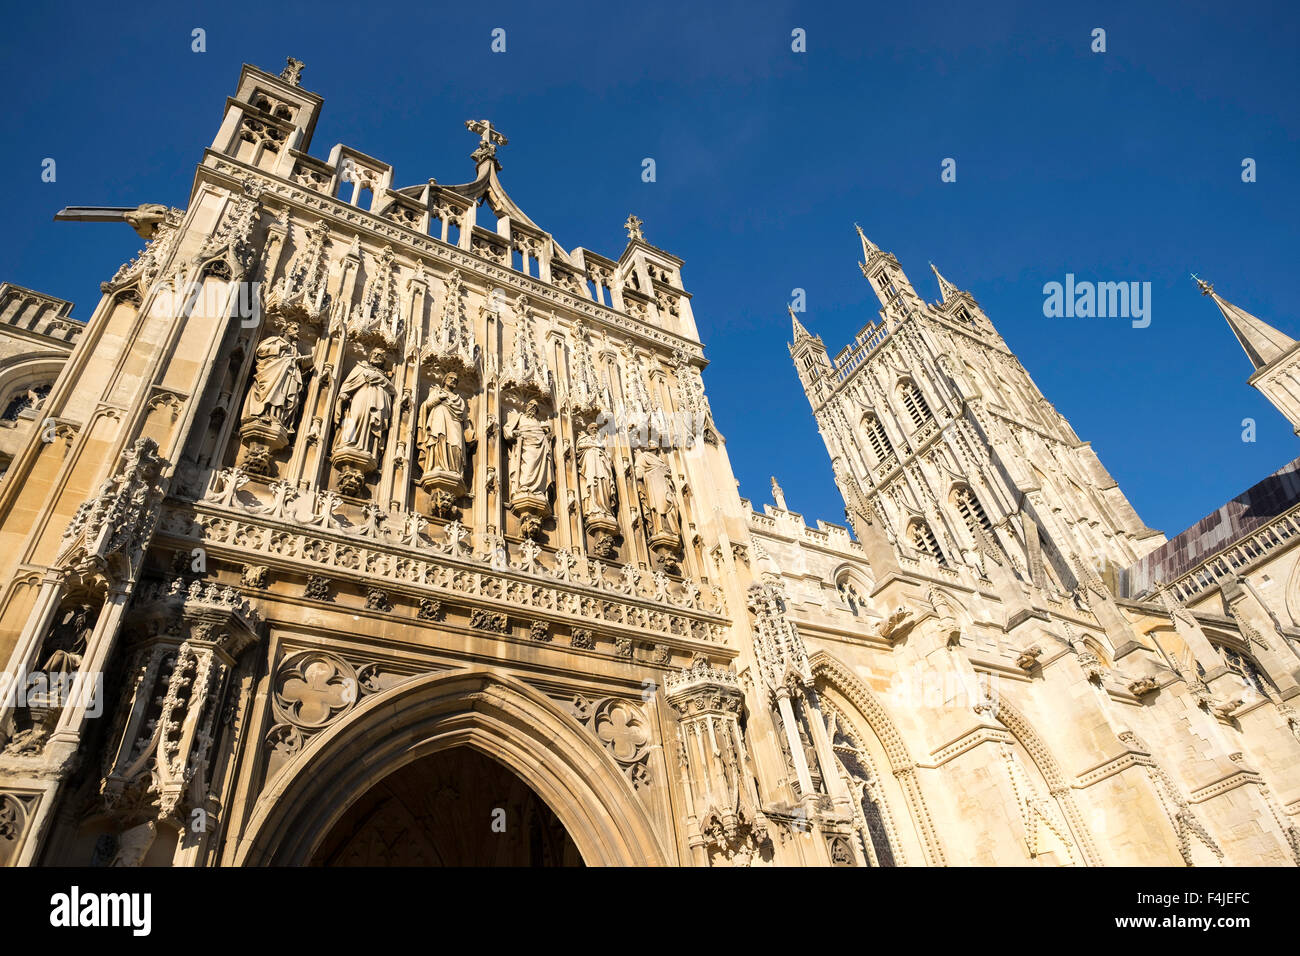 La cattedrale di Gloucester entrata principale con torri e intagli. La cattedrale si trova nel centro di Gloucester in cattedrale verde Foto Stock